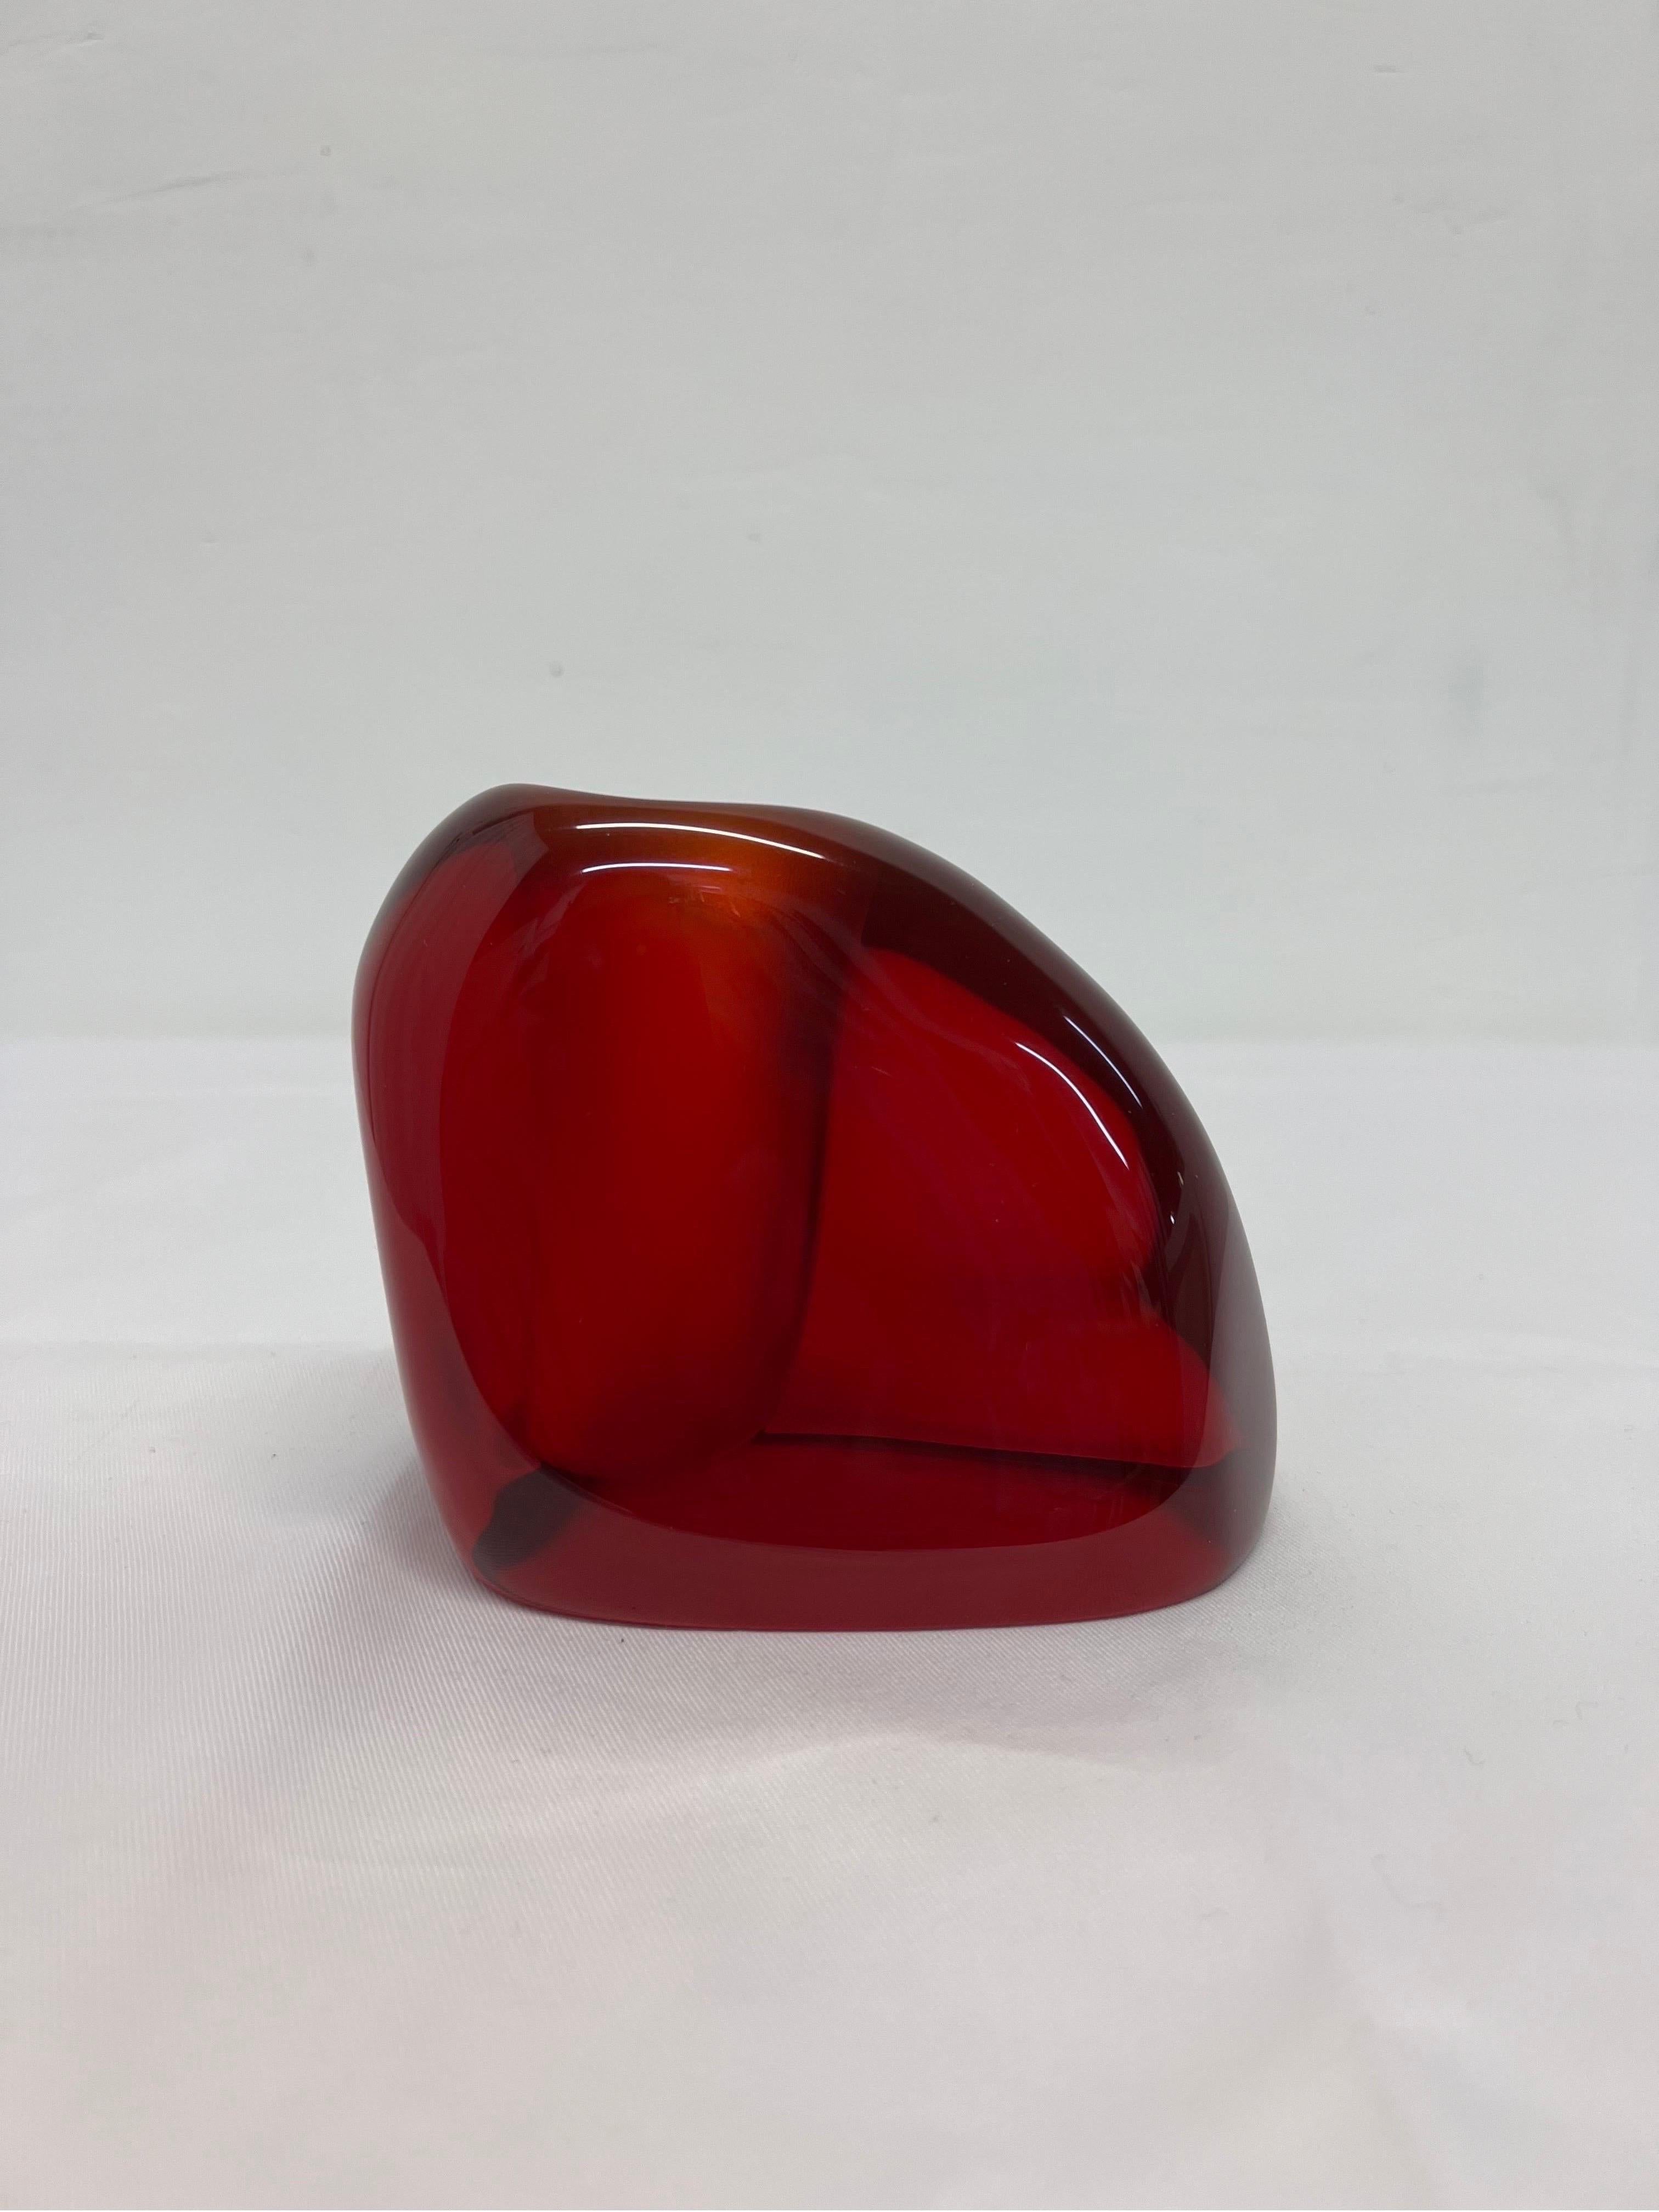 Brazilian Modern Translucent Red Resin Bud Vase, 1980s 1